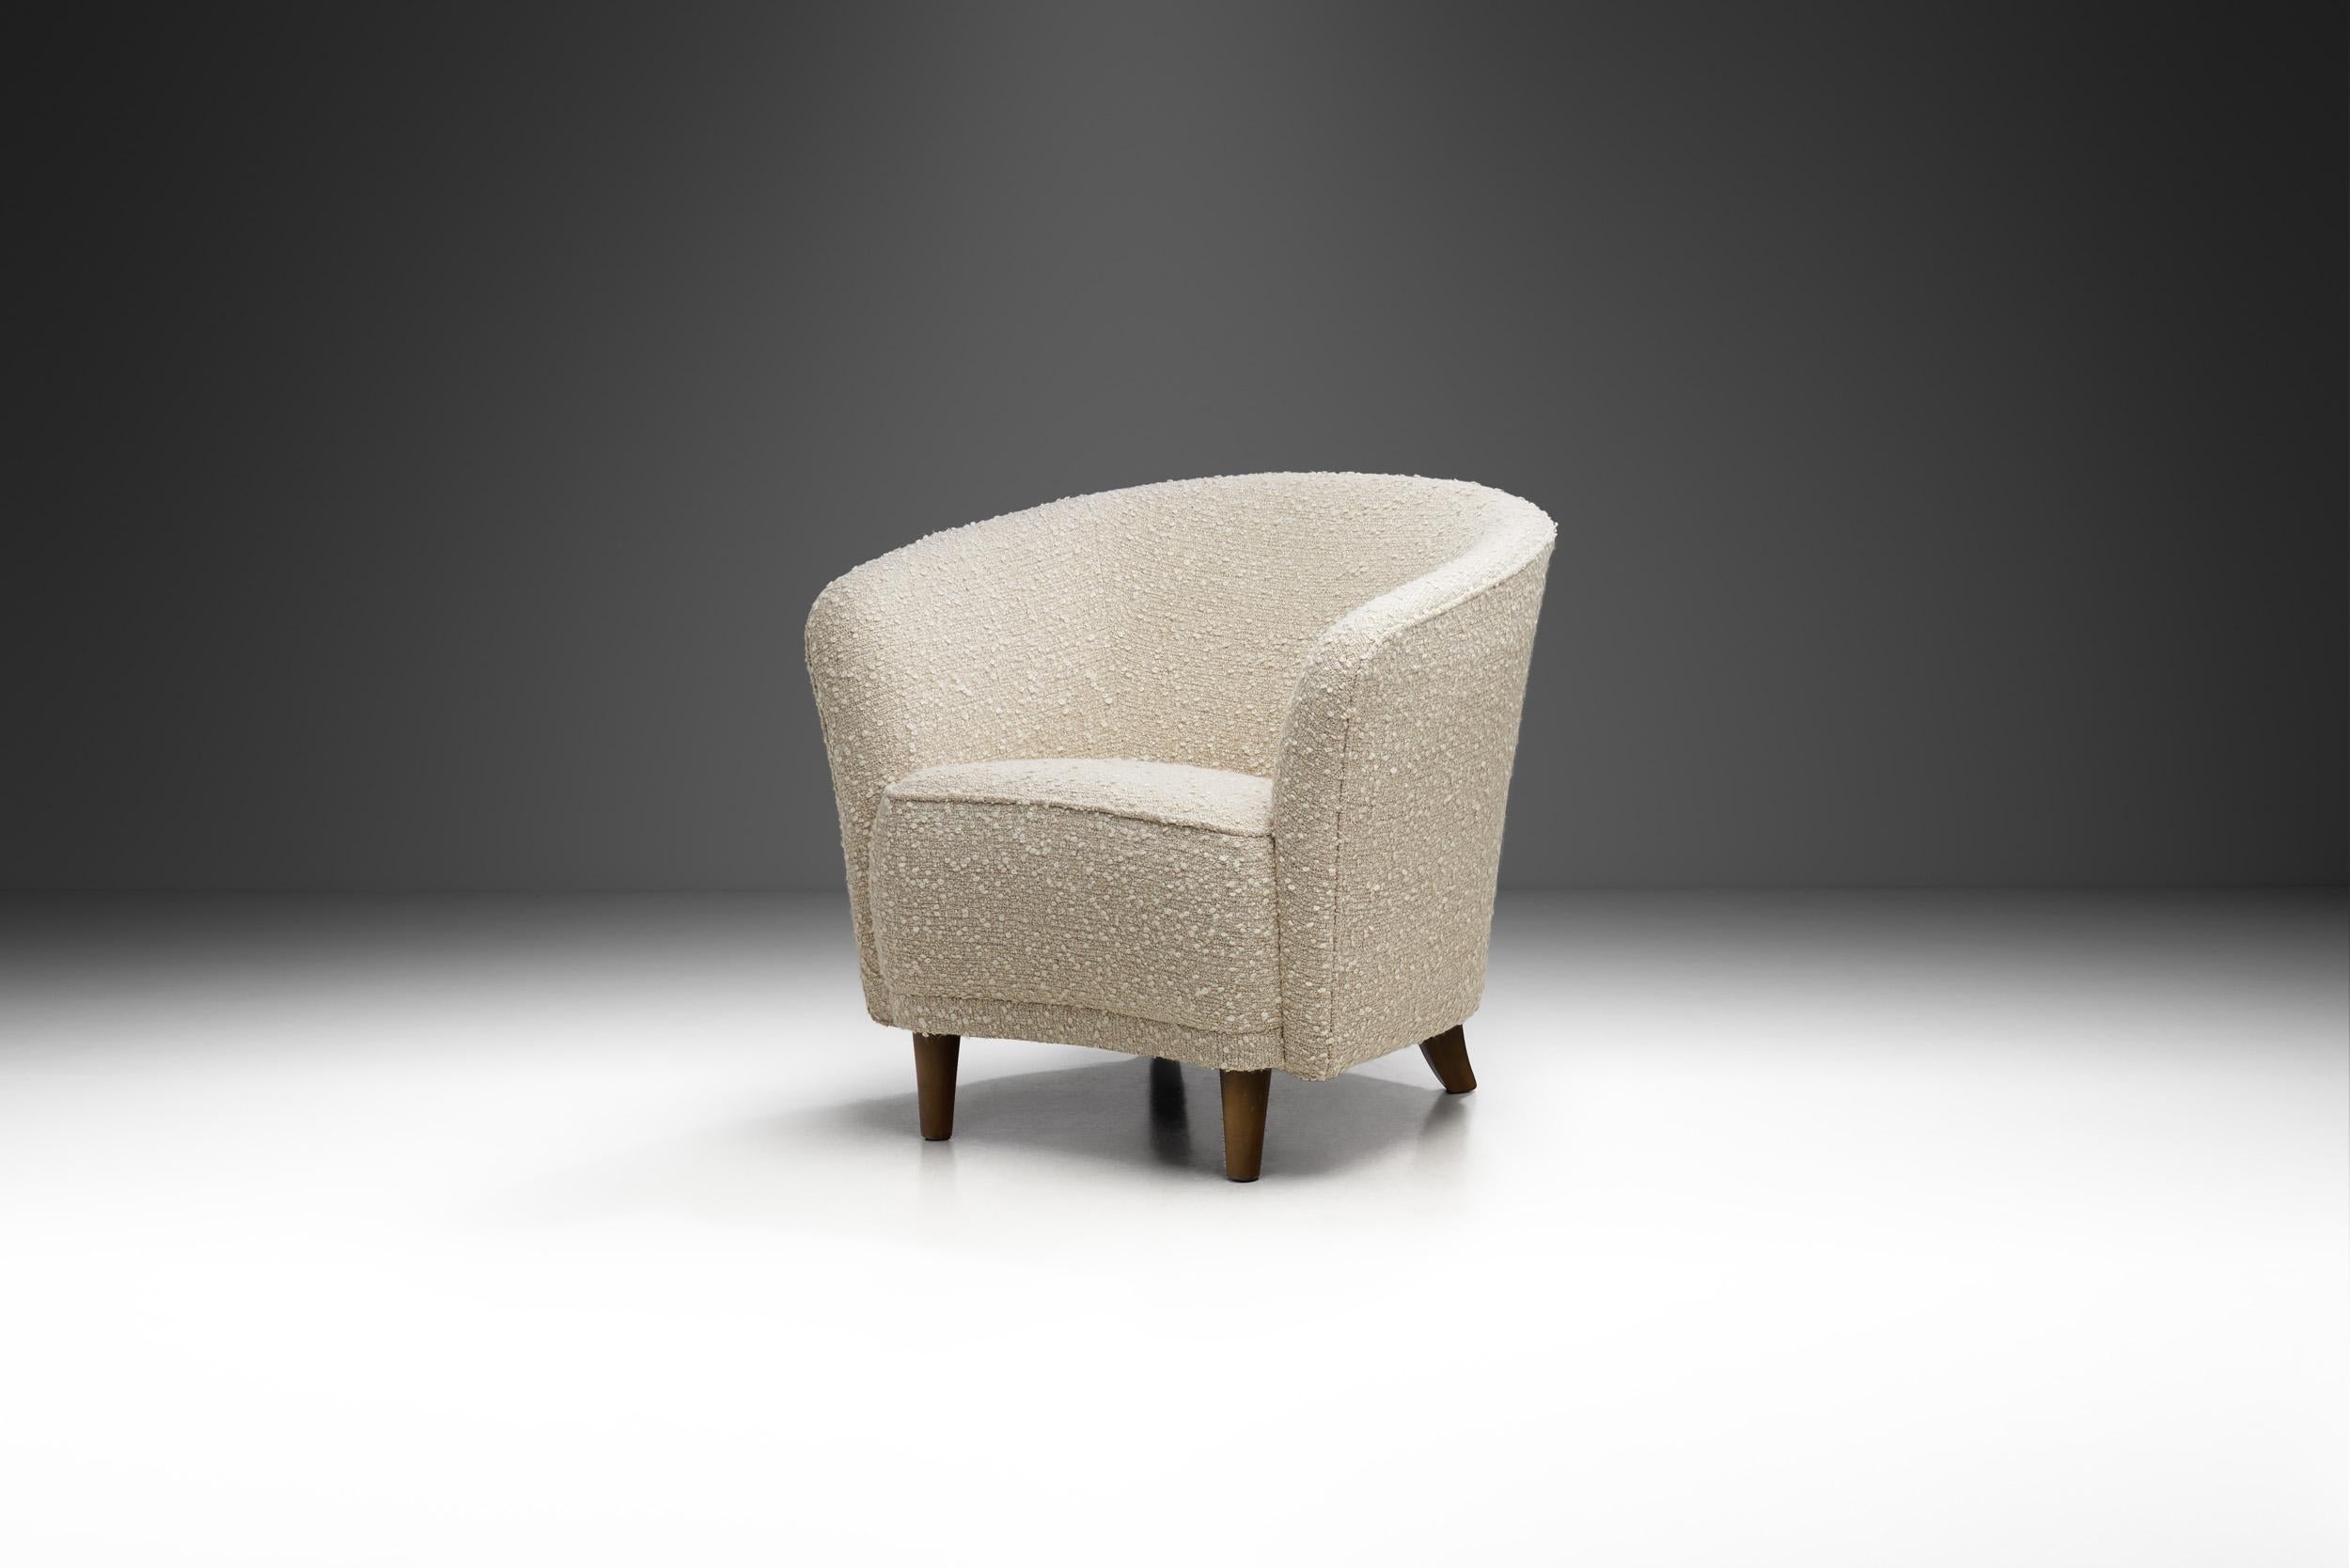 D'apparence élégamment cosy, cette chaise est un exemple stylisé du côté esthétique doux et courbé du modernisme du milieu du siècle en Europe. Adoptant la tendance d'abandonner l'ornementation au profit de la forme, le concepteur de cette chaise a